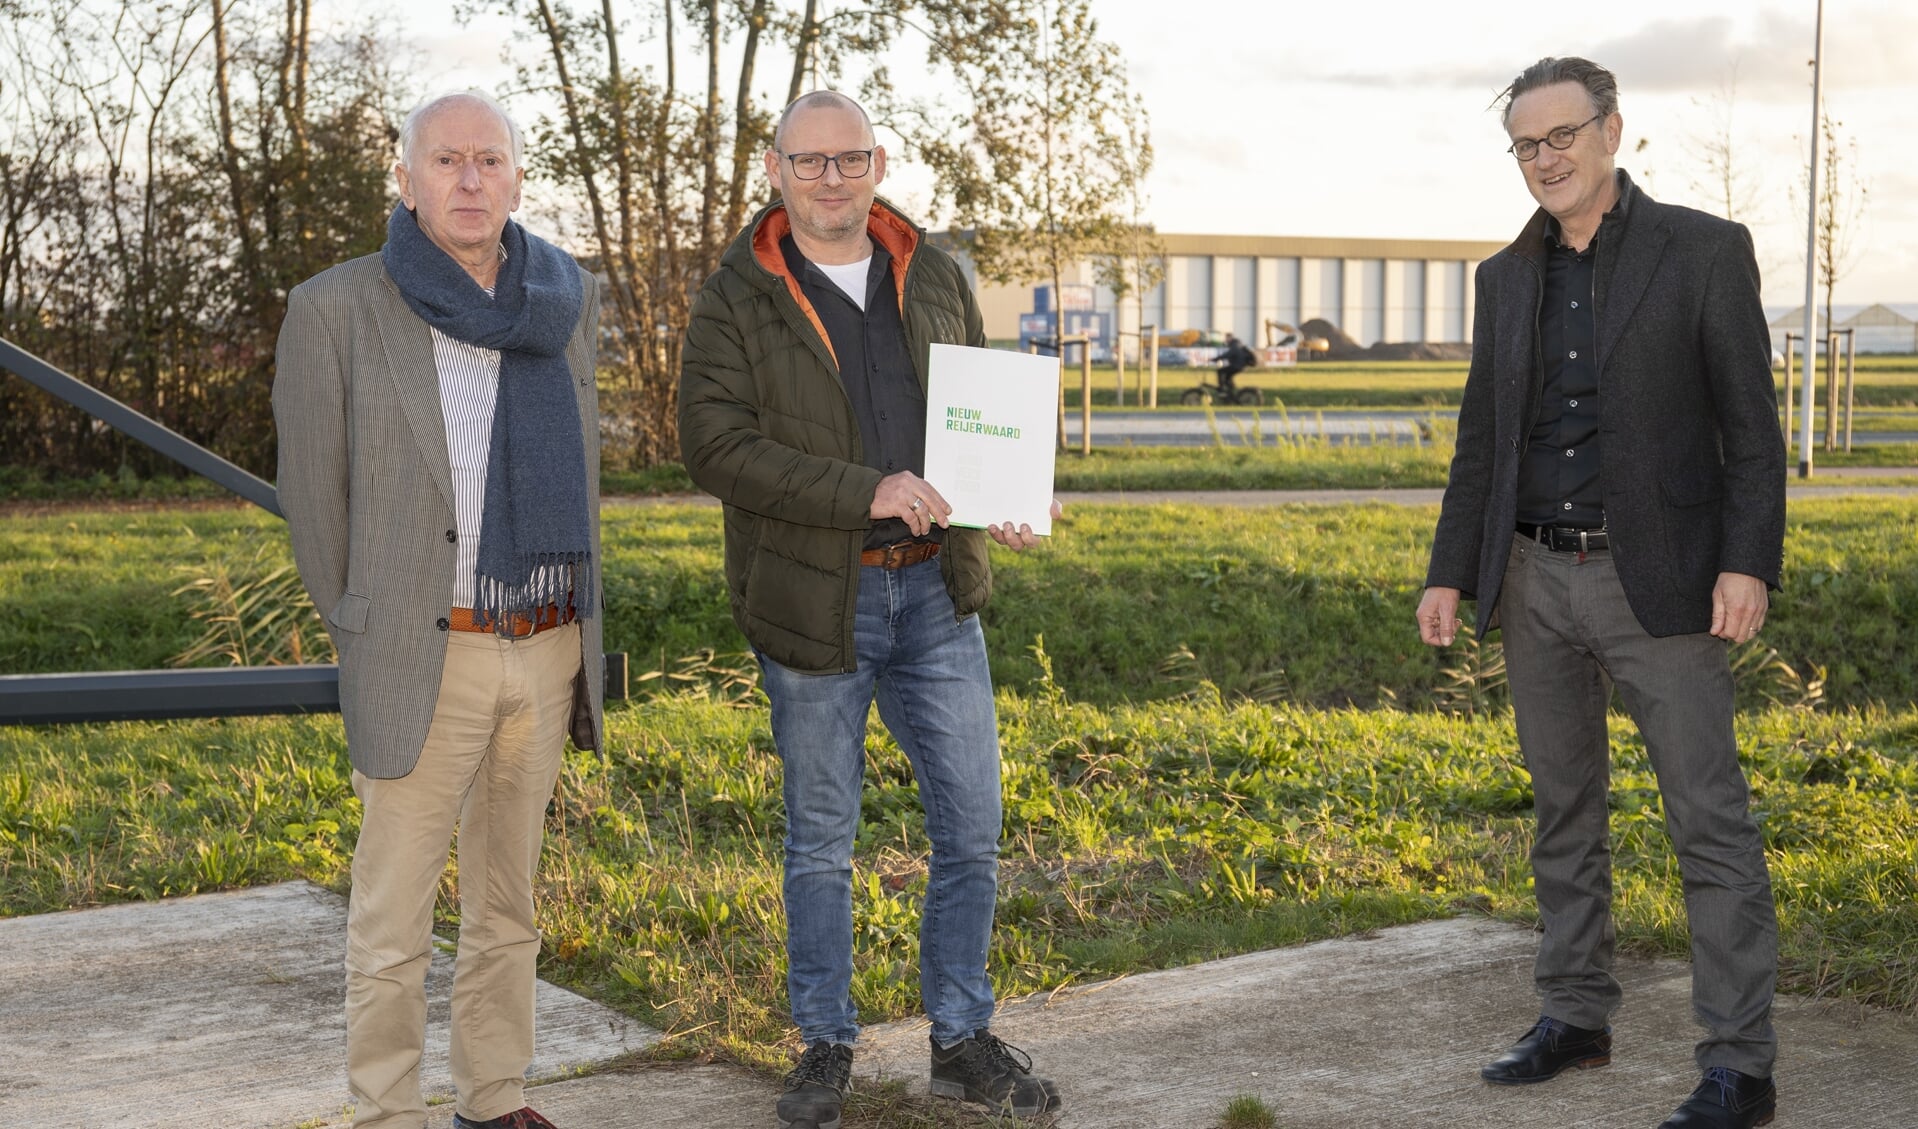  Van links naar rechts: A.F.L. Barendrecht, oprichter van het bedrijf; E. Barendrecht, algemeen directeur van AFL Barendrecht; Gert-Jan Metselaar, directeur van de Gemeenschappelijke Regeling Nieuw Reijerwaard (GRNR). 